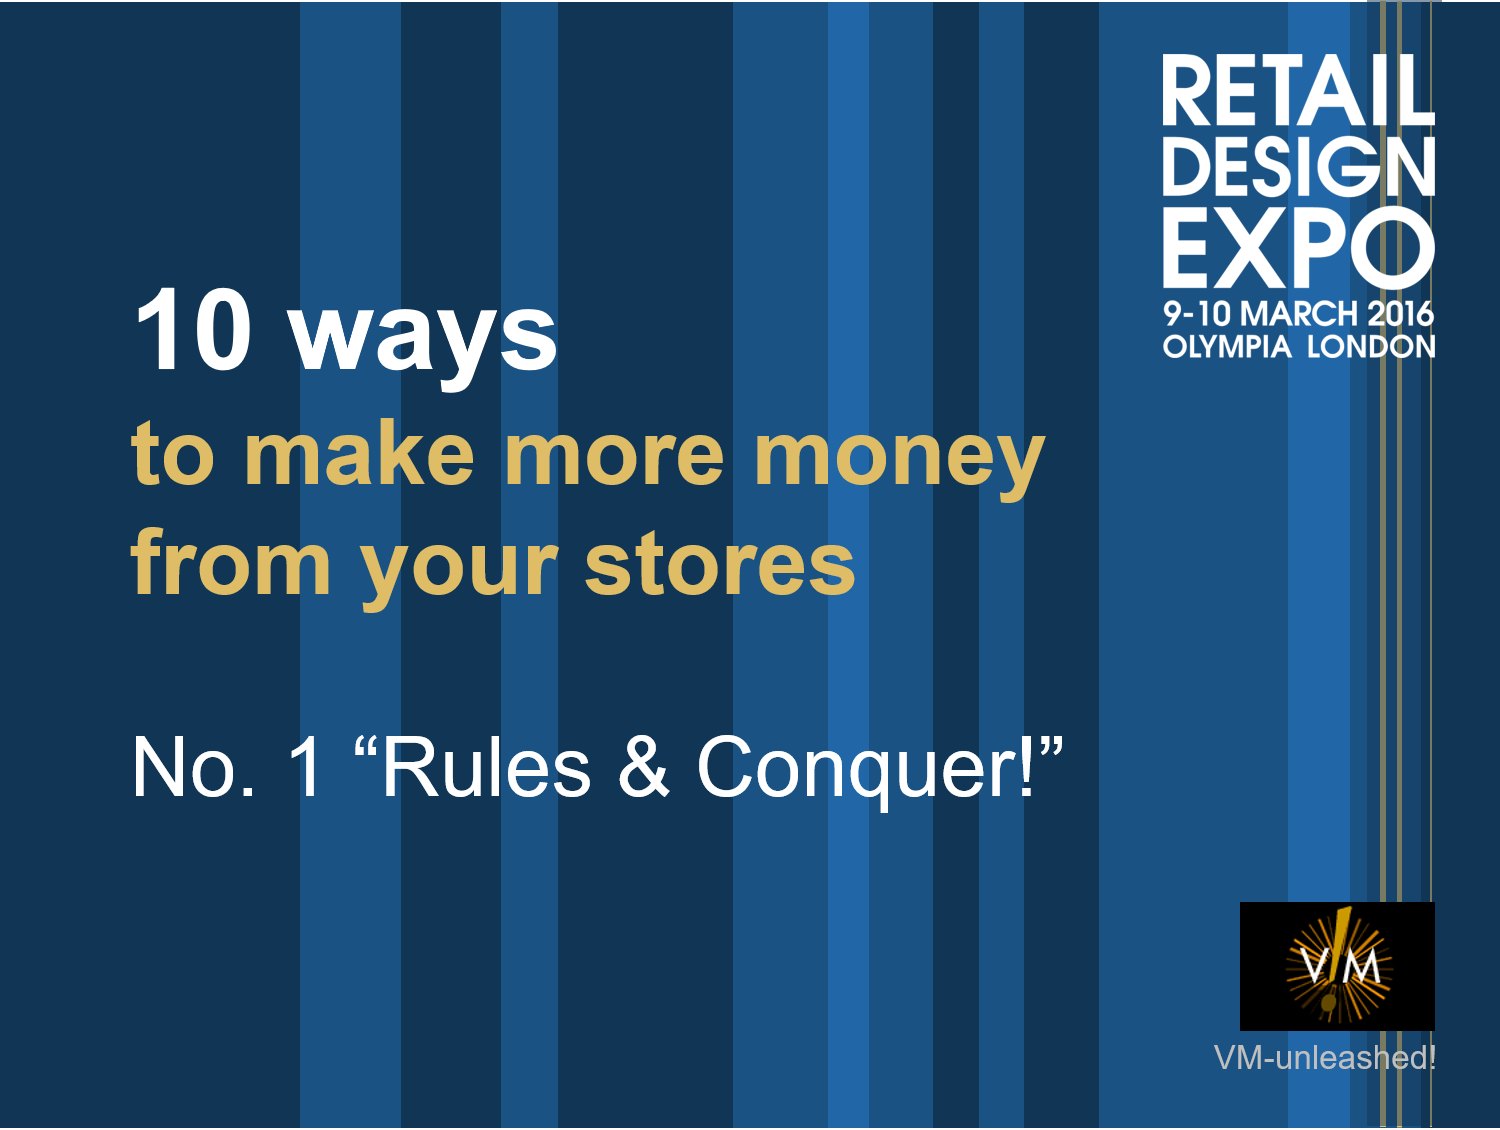 retaildesignexpo-rules-and-conquer